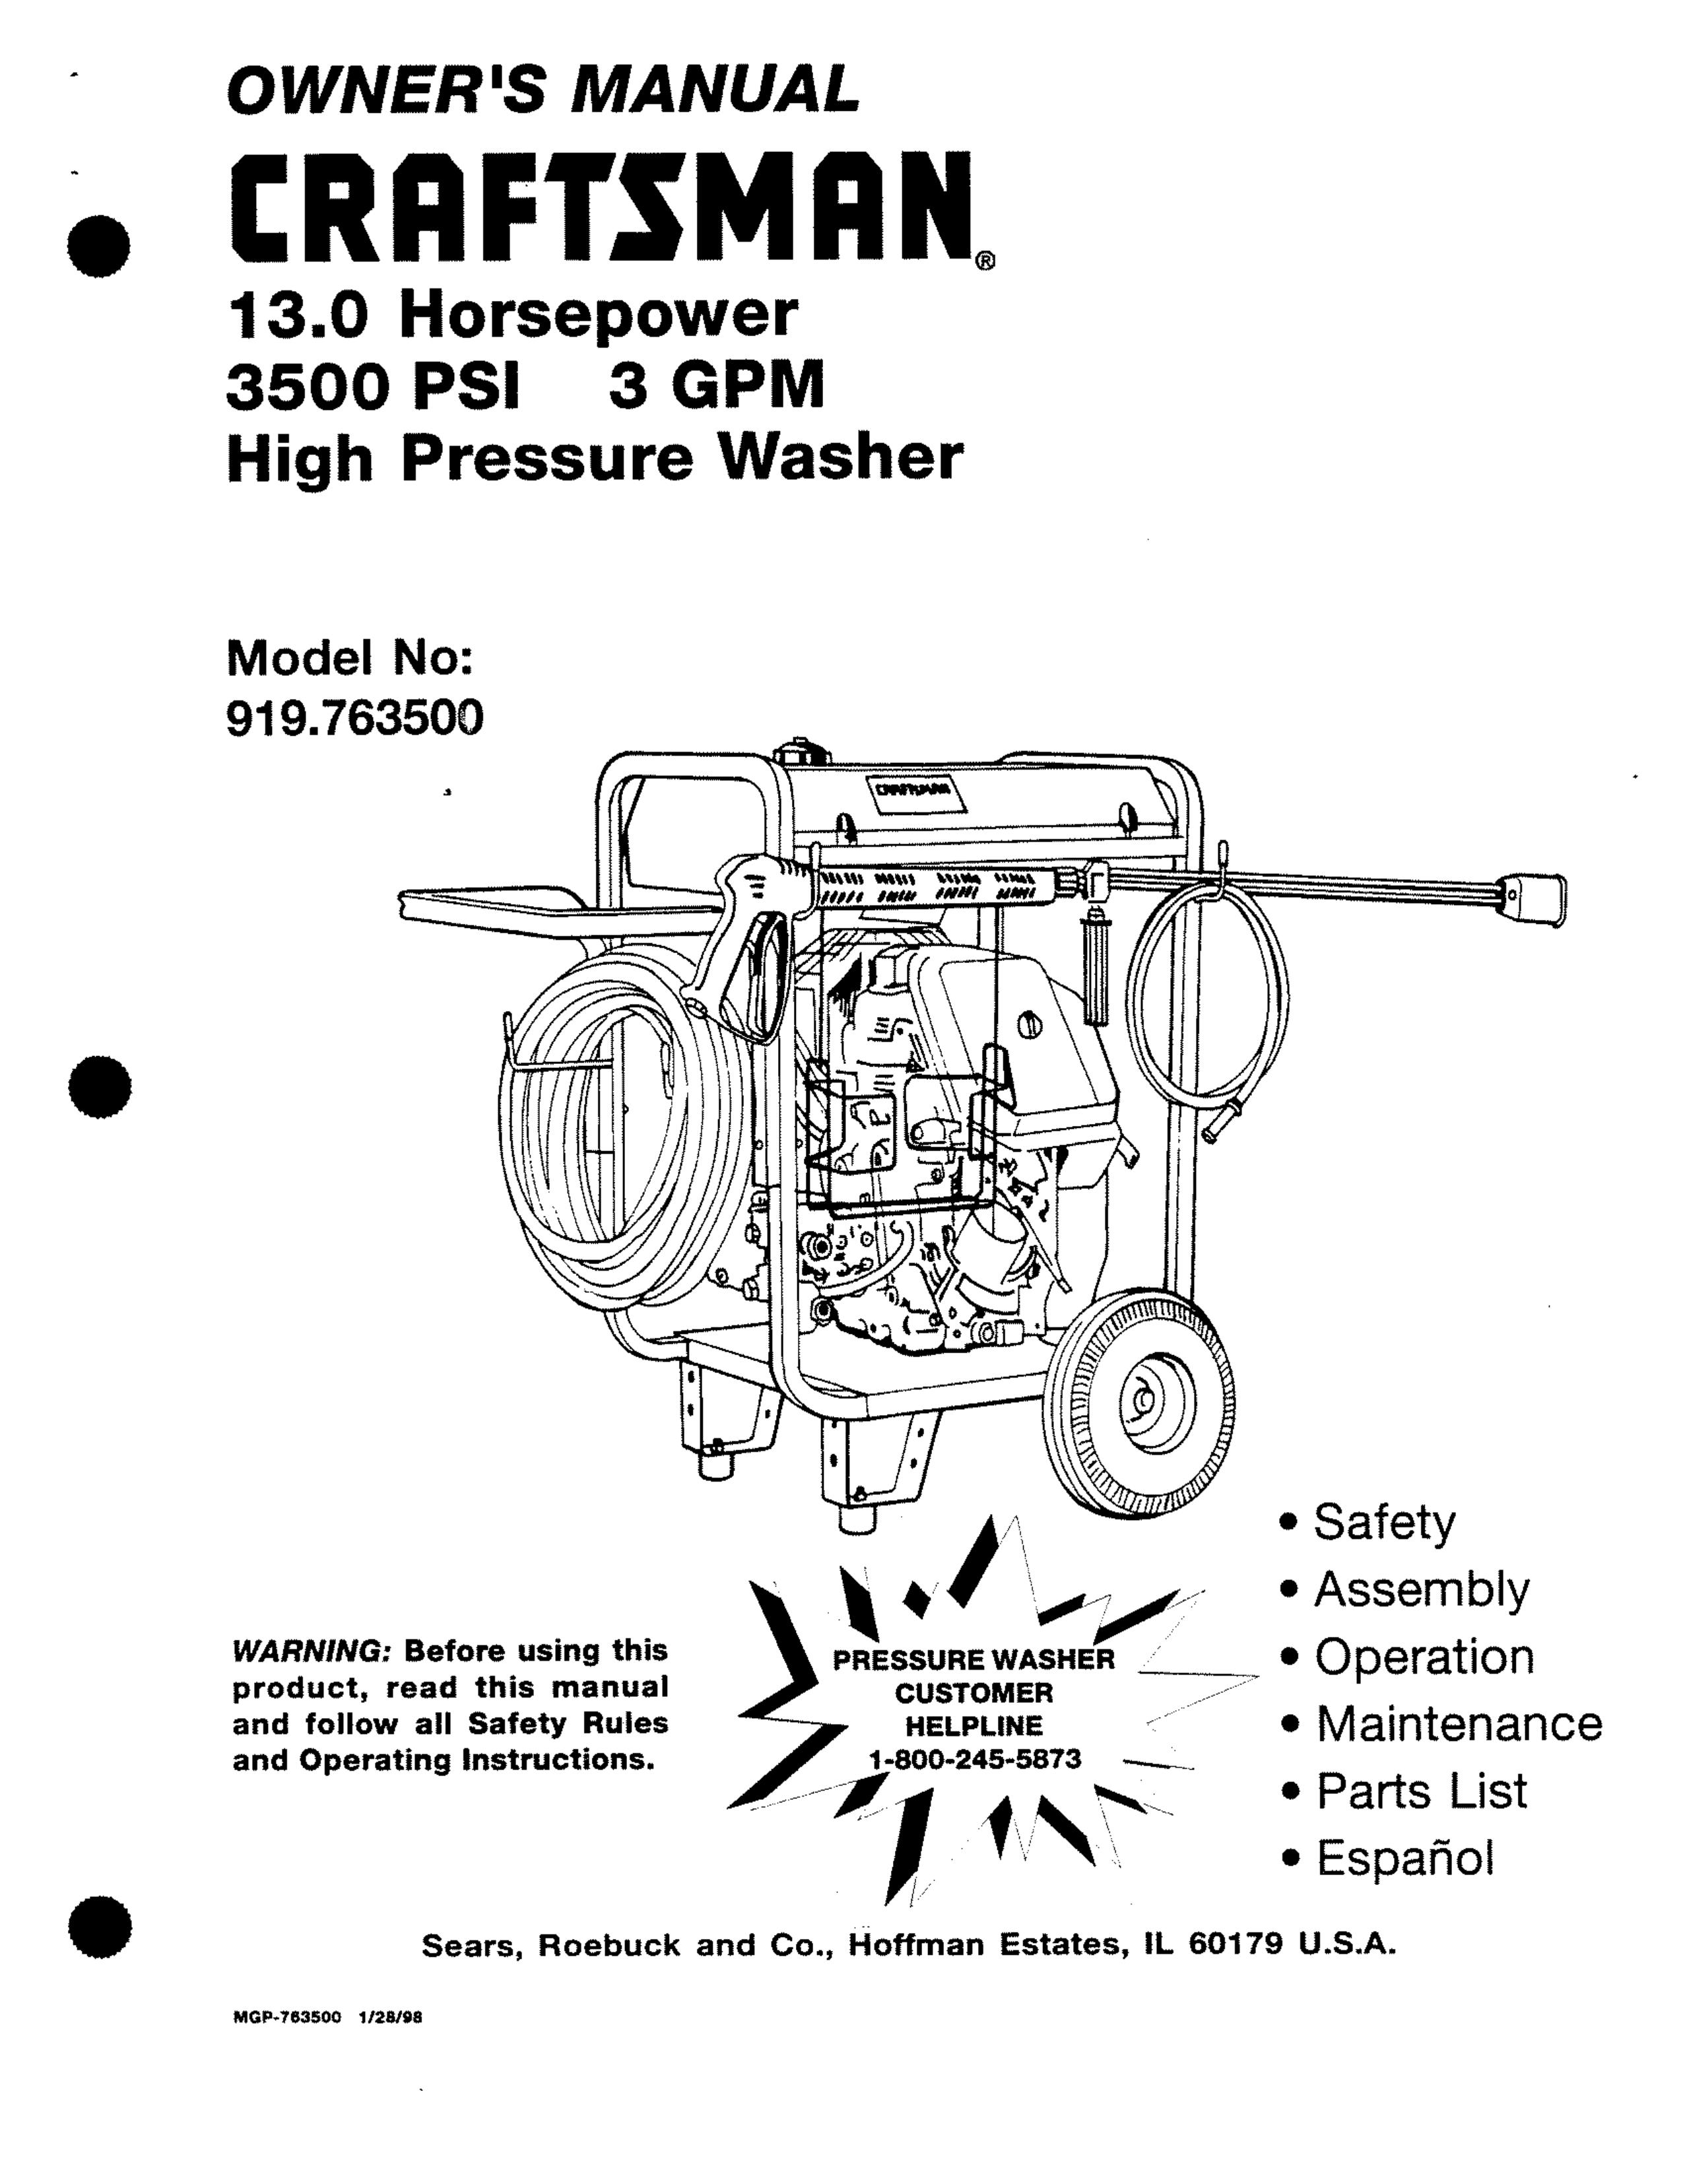 Craftsman MGP-743500 Pressure Washer User Manual